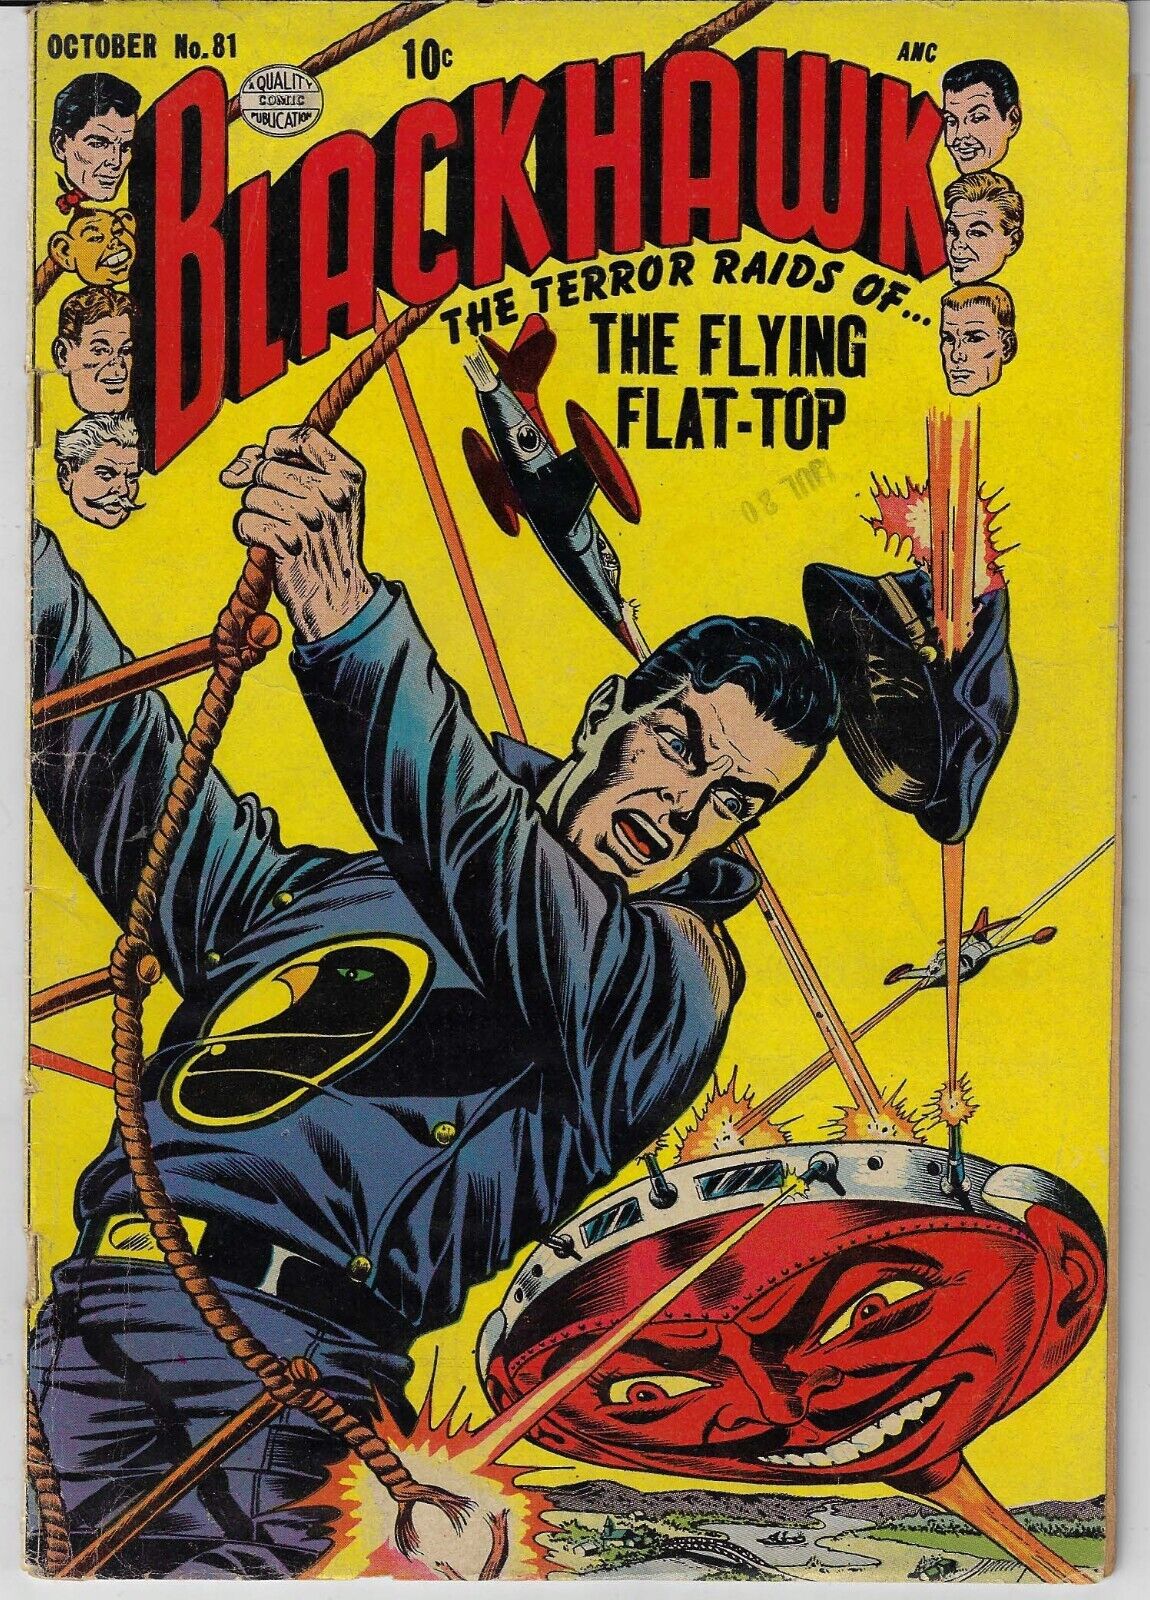 BLACKHAWK # 81 QUALITY COMICS 1954 CLASSIC SATAN COVER